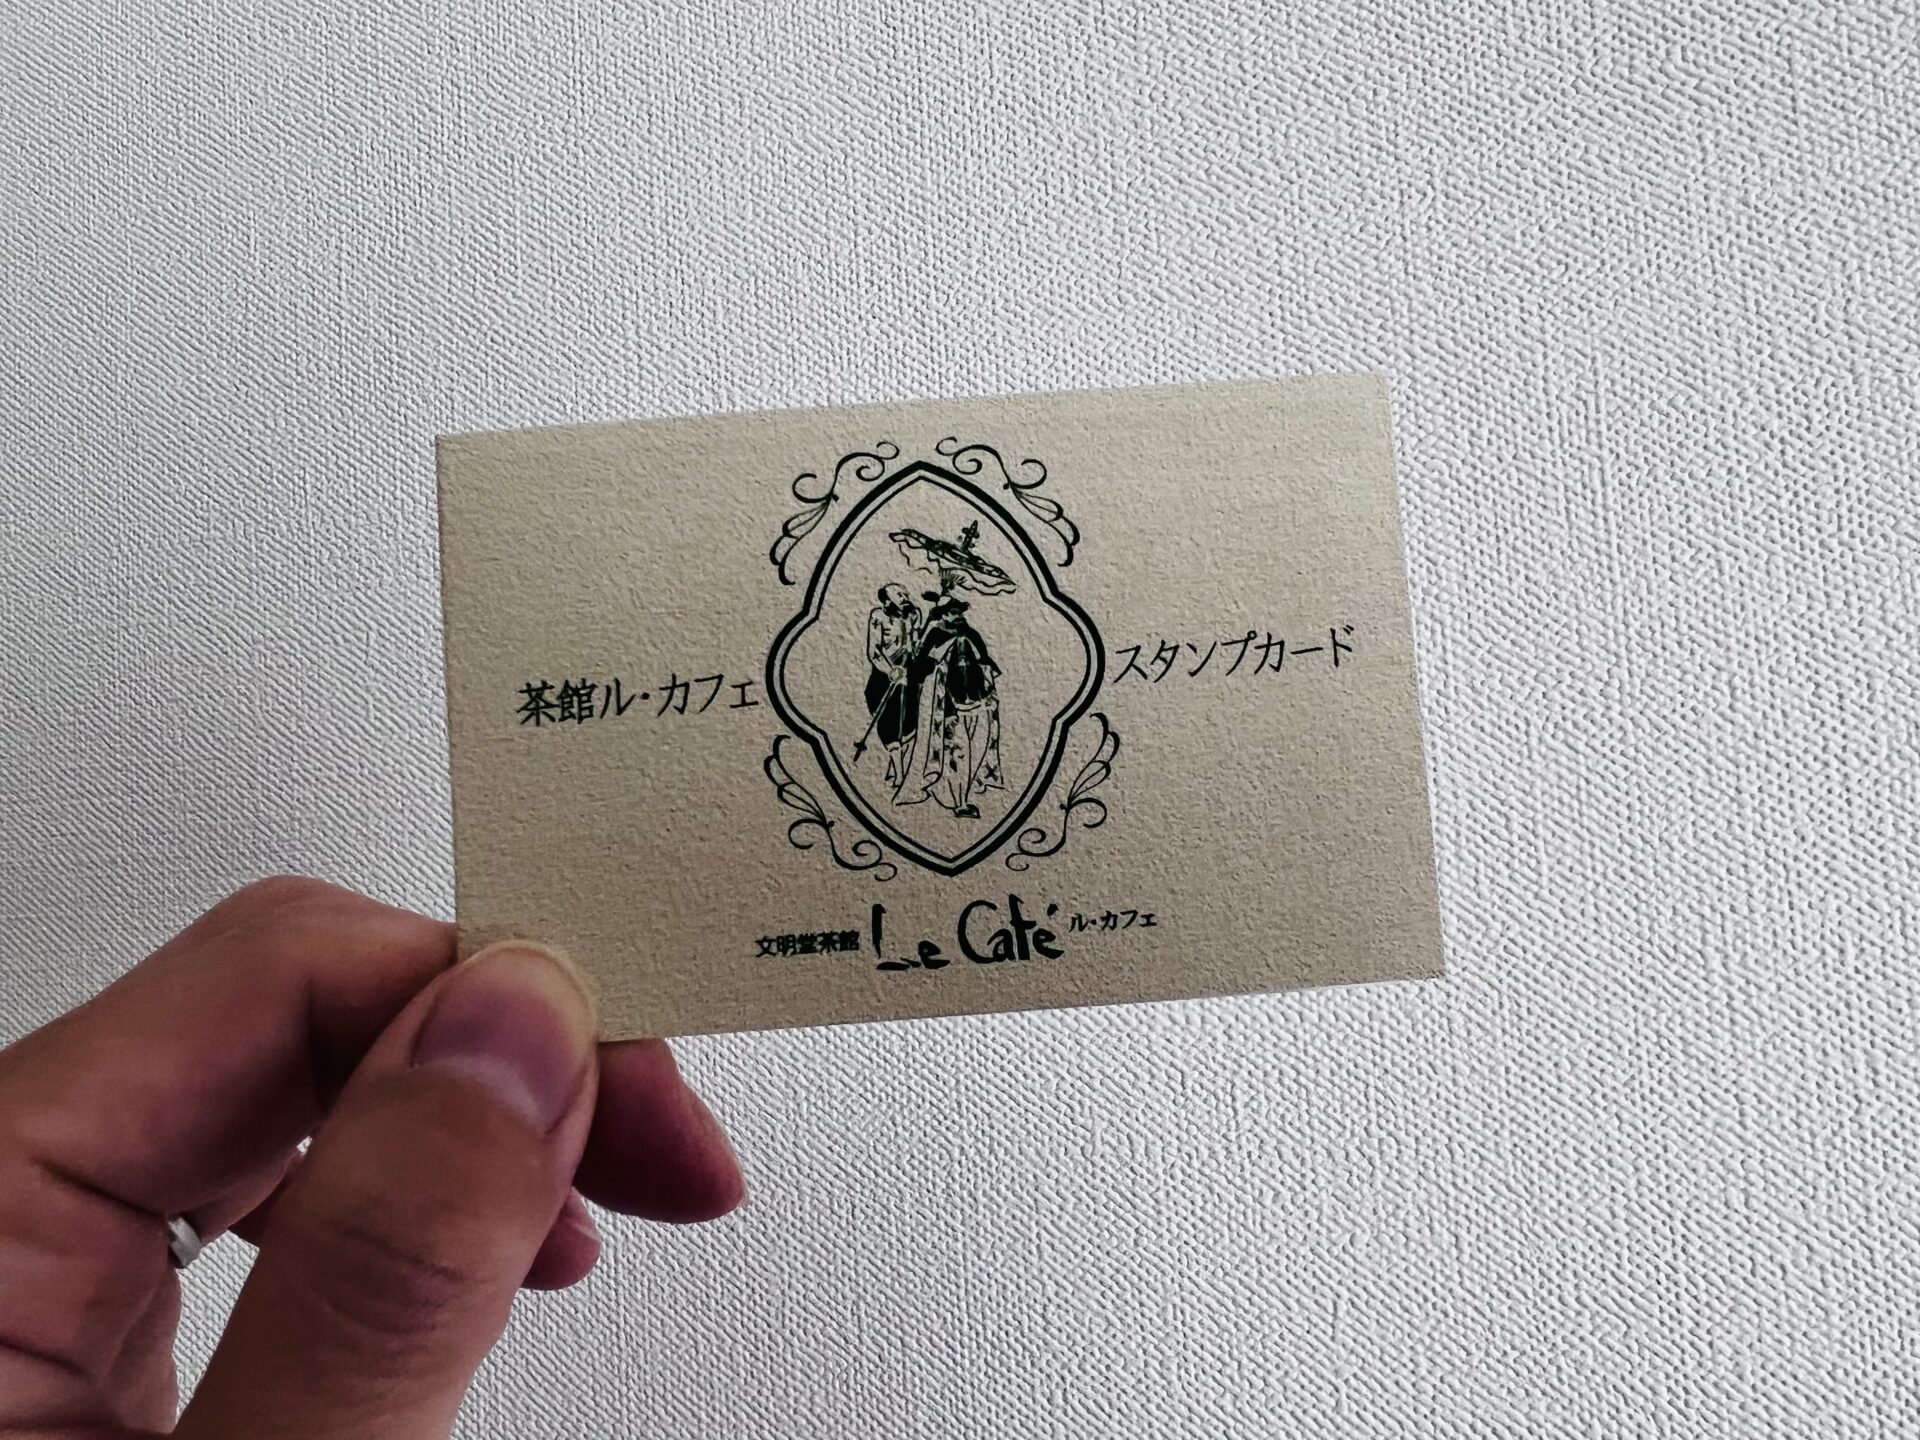 文明堂茶館 Le Cafe ポイントカード